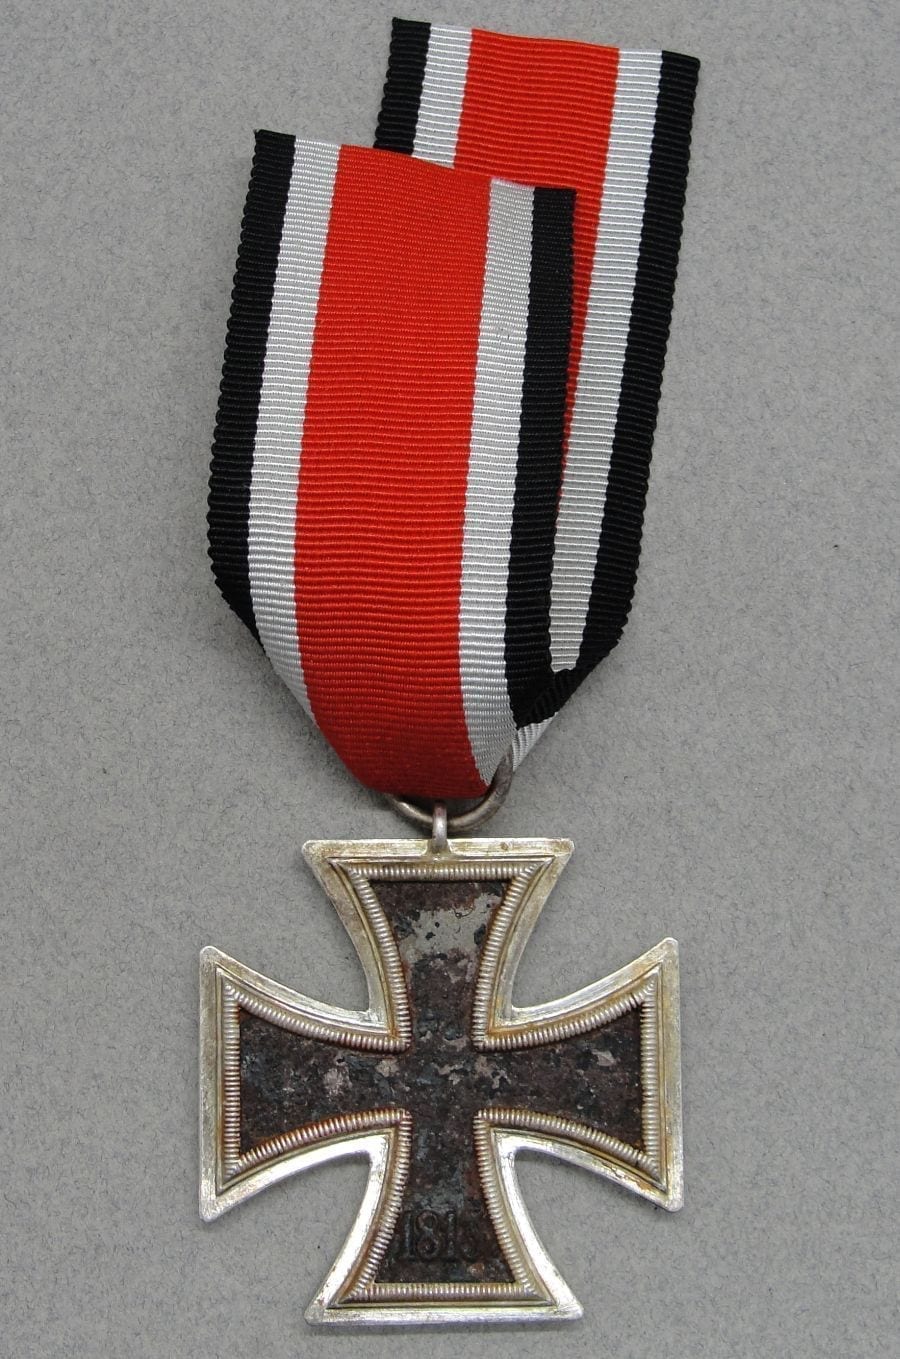 1939 Iron Cross Second Class by "120" Franz Petzl